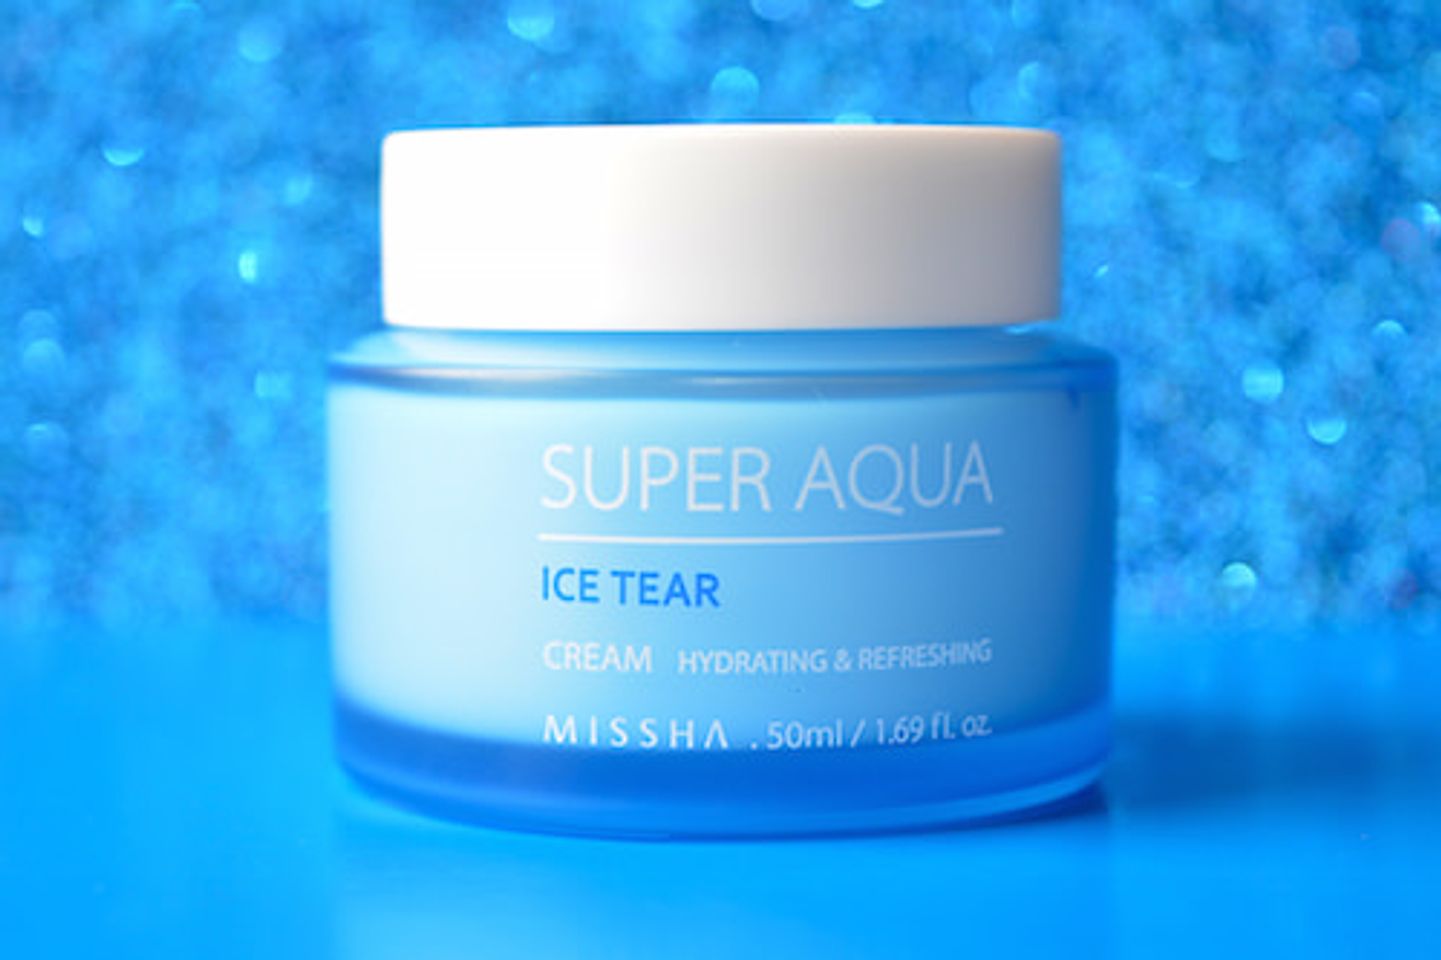 Kem dưỡng ẩm Missha Super Aqua Ice Tear Cream 50ml chứa chiết xuất tảo xoắn cùng các loại thực vật vùng sa mạc có khả năng cấp ẩm và giữ ẩm cho da